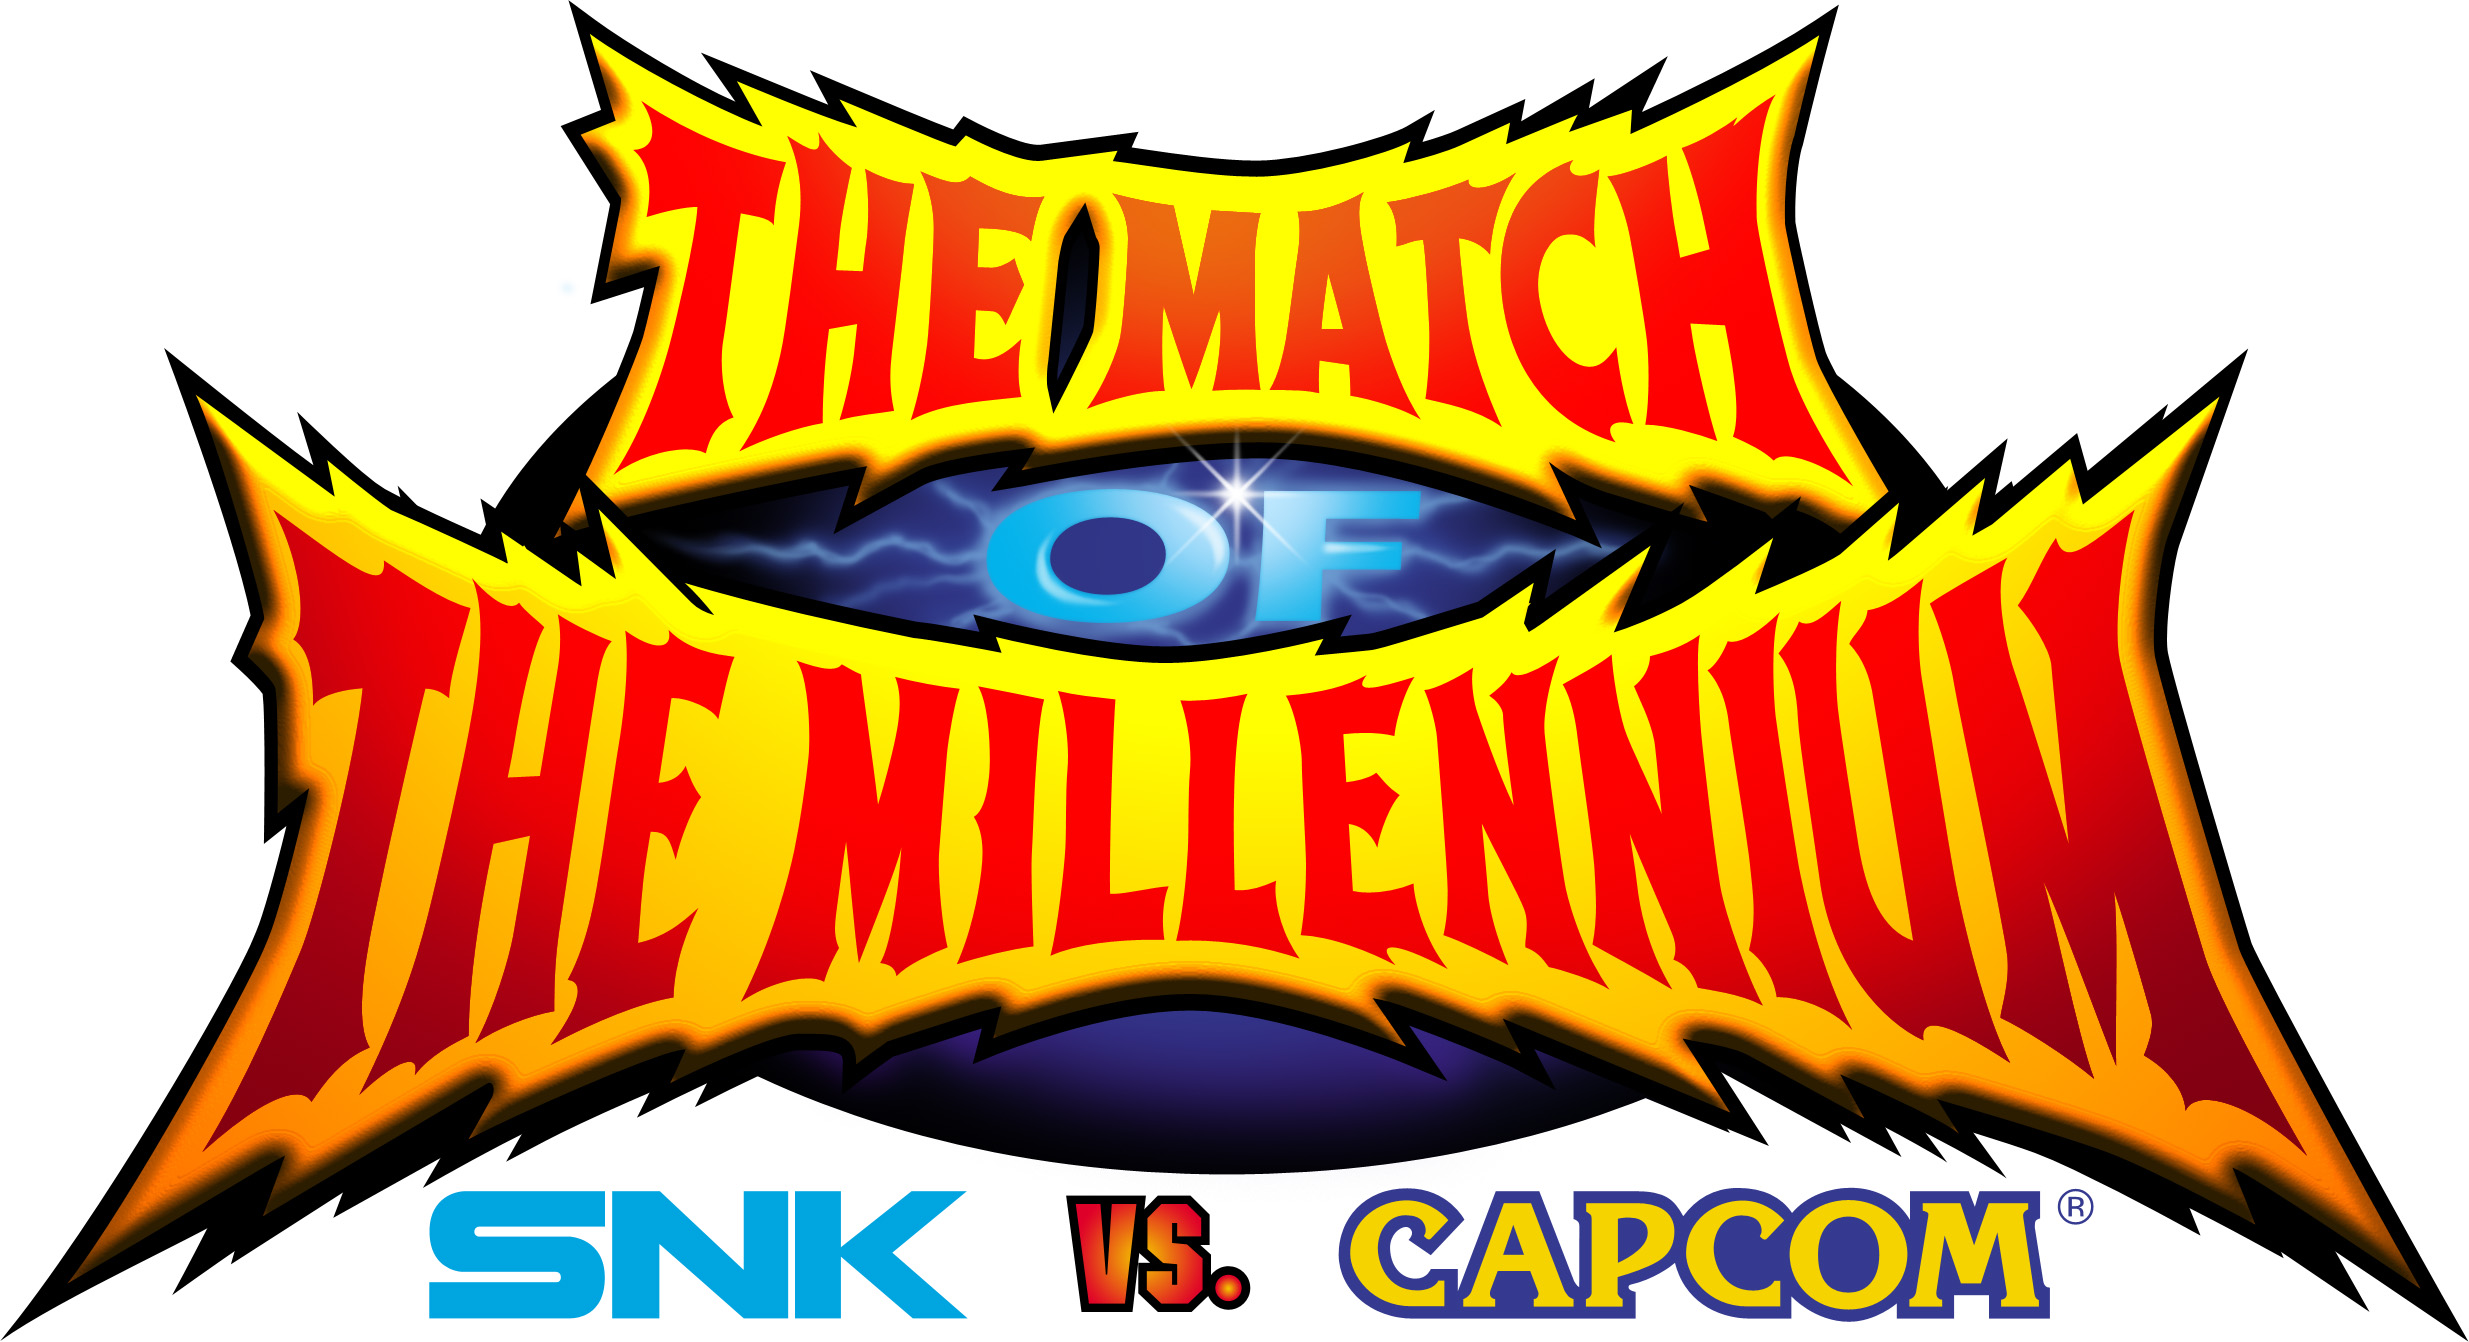 SNK VS. CAPCOM: THE MATCH OF THE